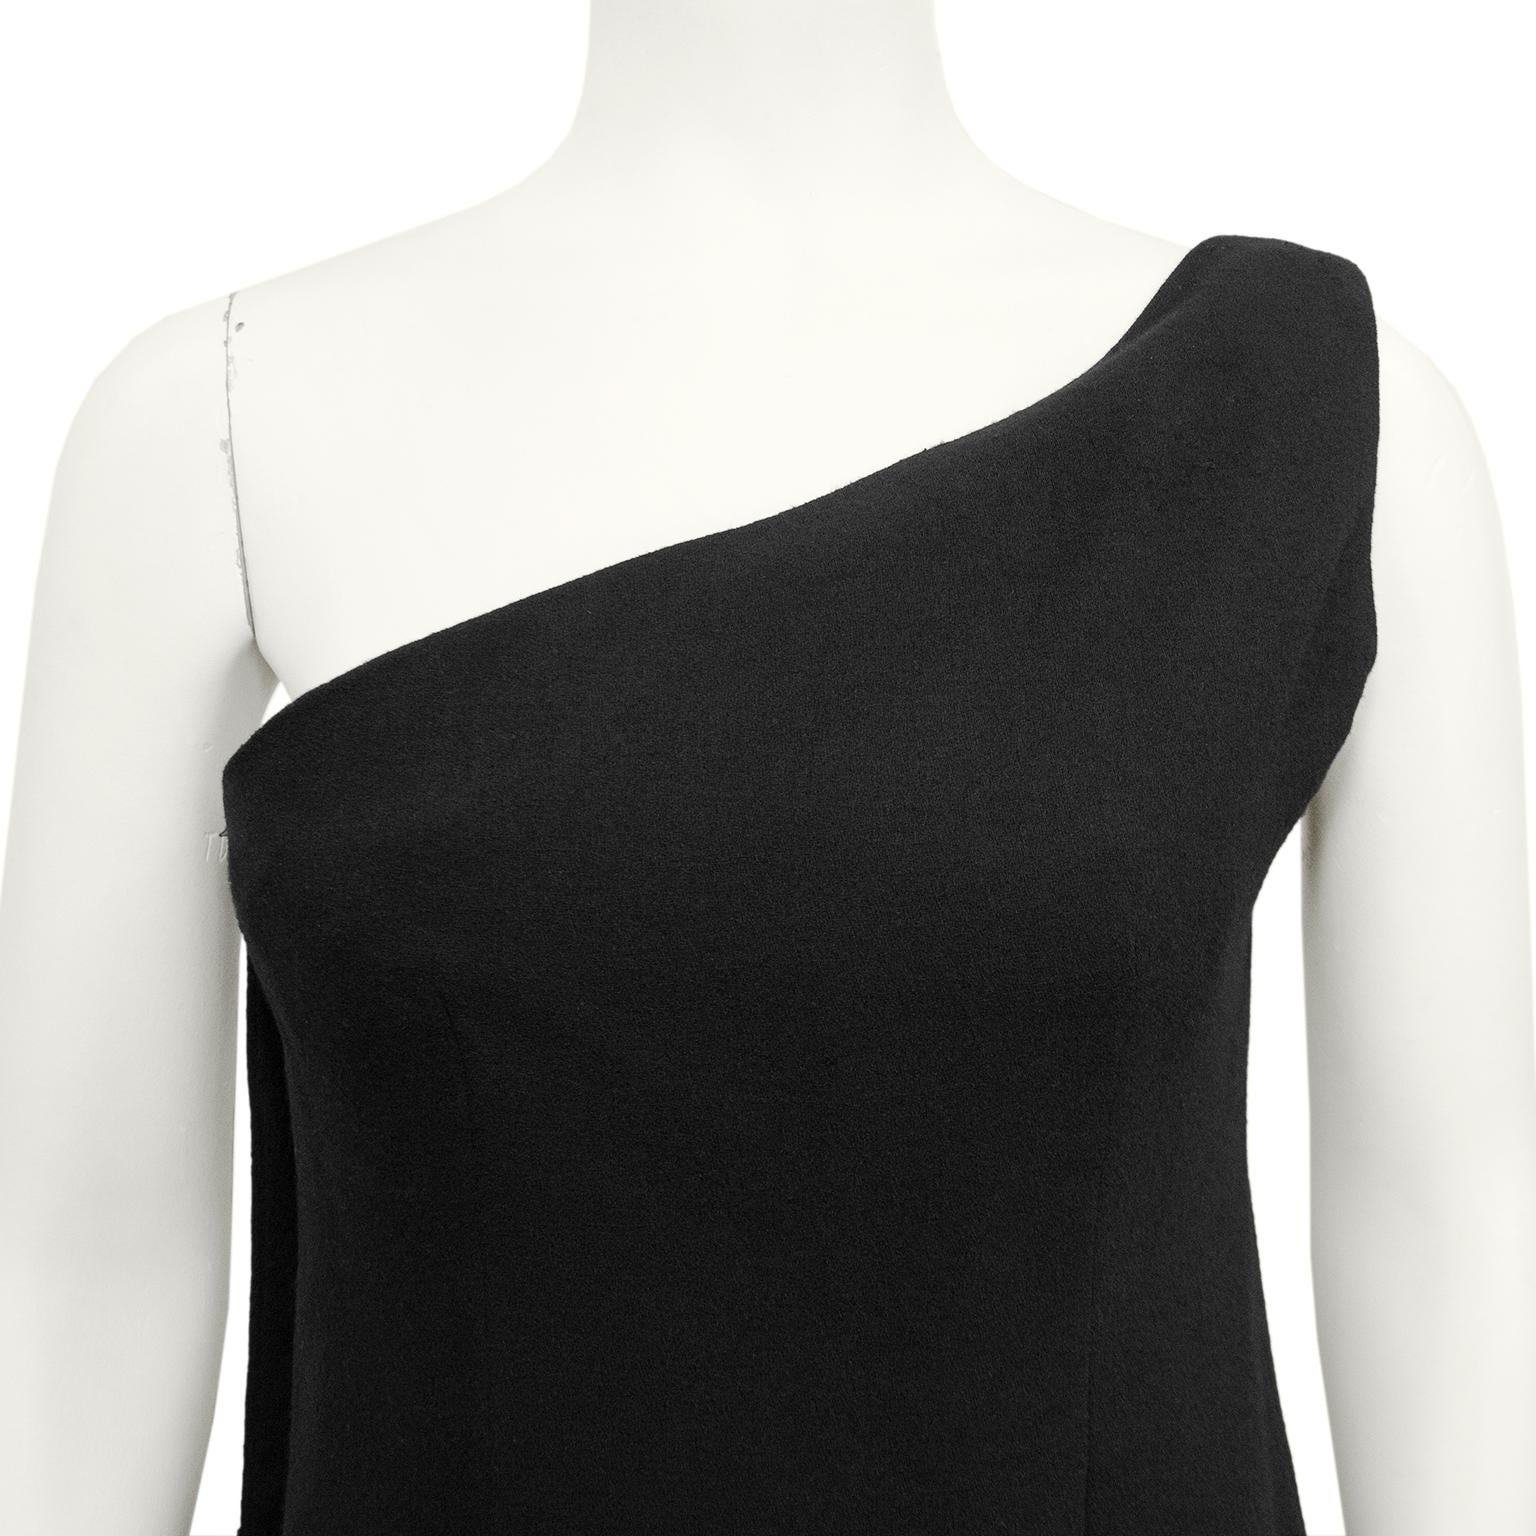  1968 Christian Dior Black Wool Crepe One Shoulder Wrapped Evening Dress (Robe de soirée enveloppée en crêpe de laine) Pour femmes 